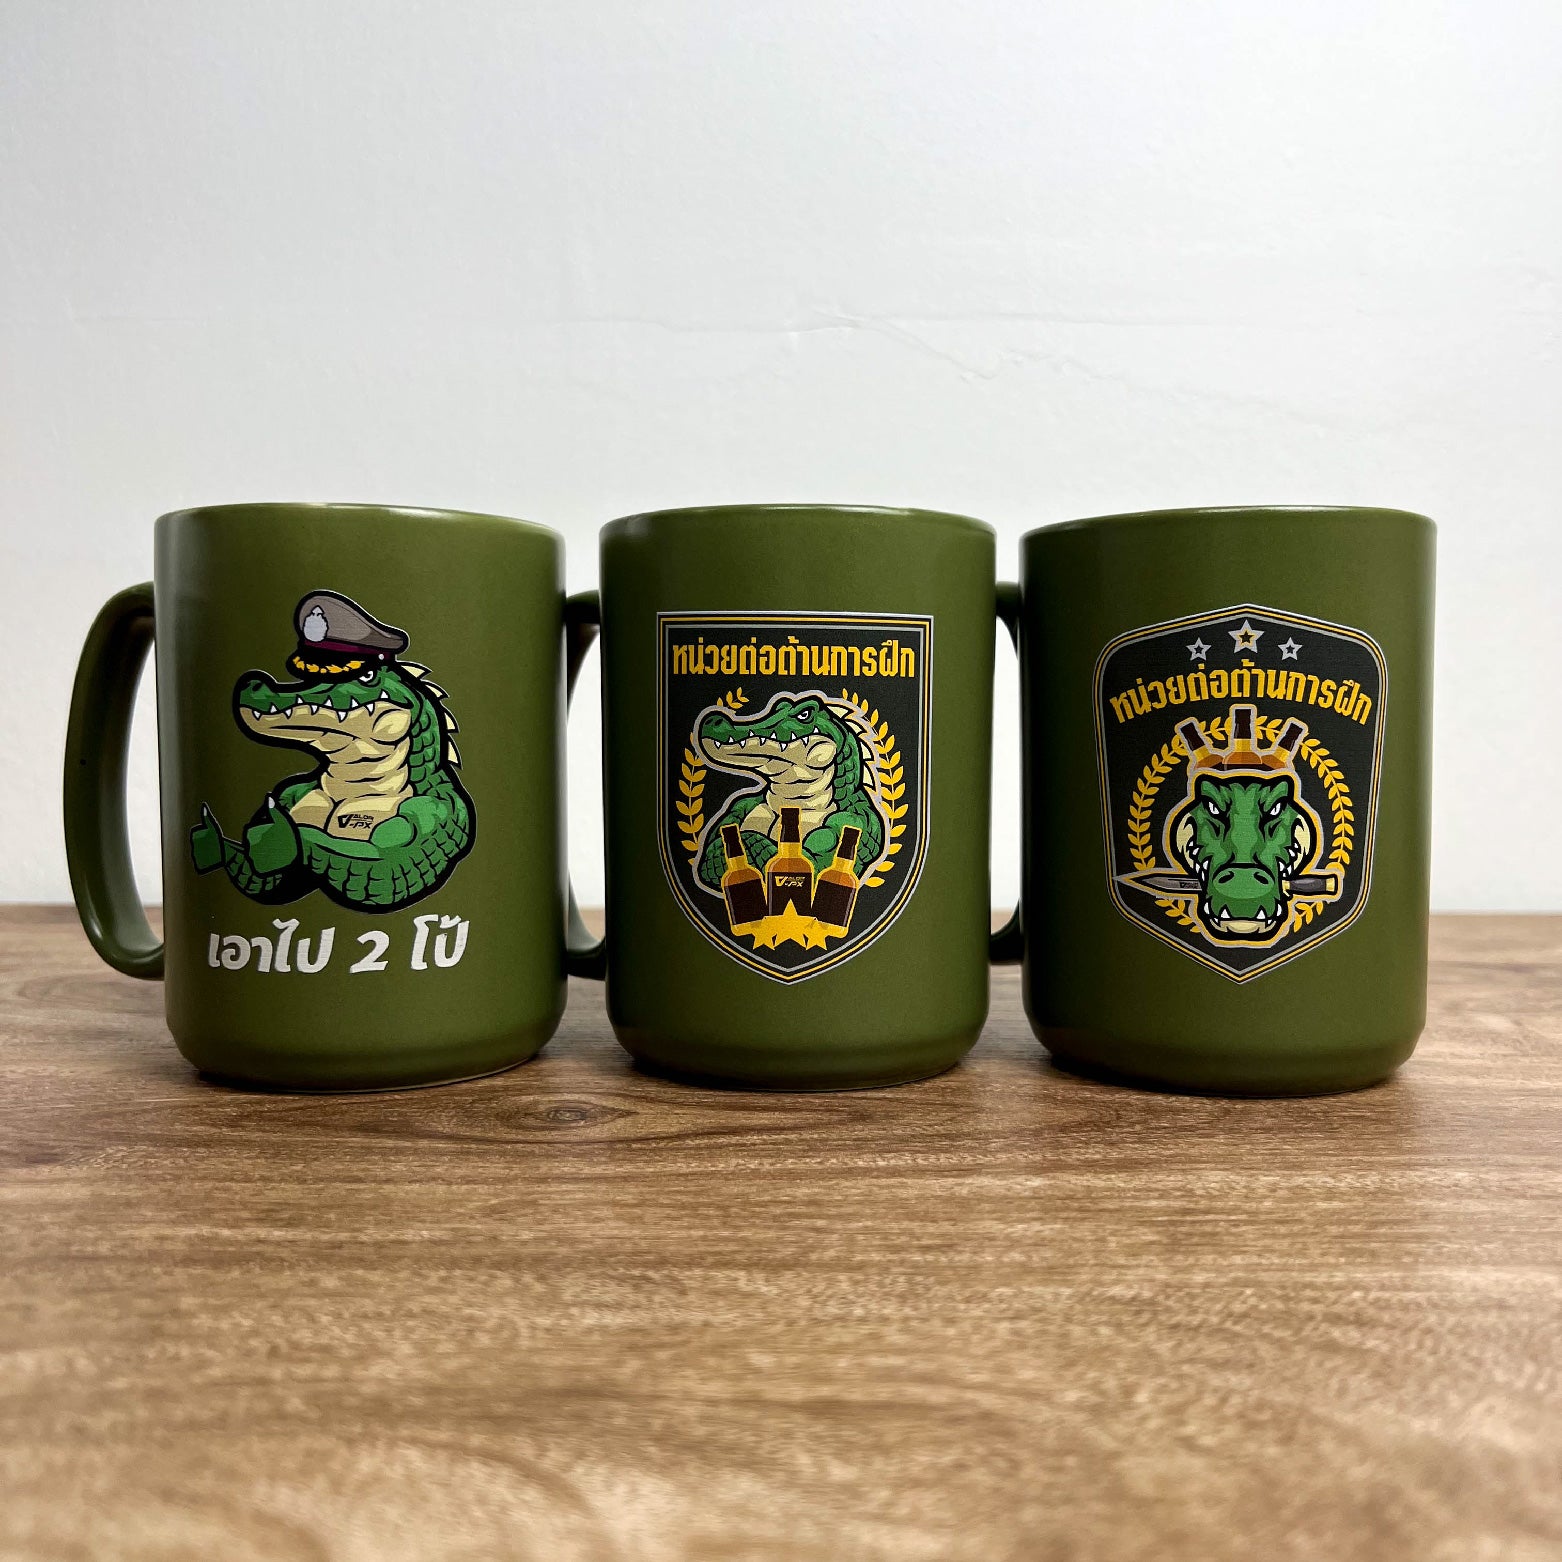 หรวจลาว Ceramic Mug แก้วกาแฟ - หน่วยต่อต้านการฝึก V.2 [Green]